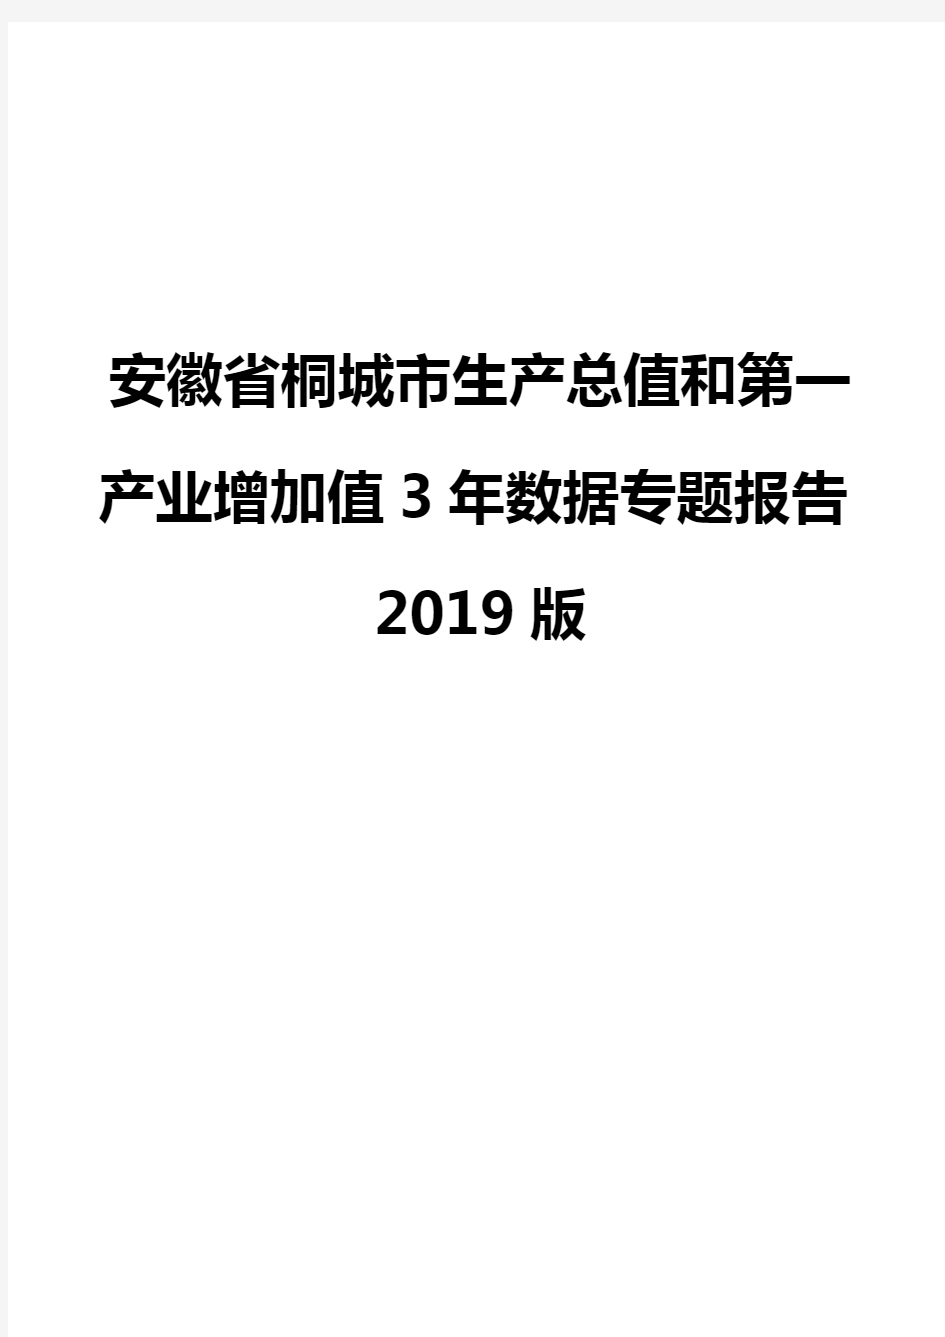 安徽省桐城市生产总值和第一产业增加值3年数据专题报告2019版